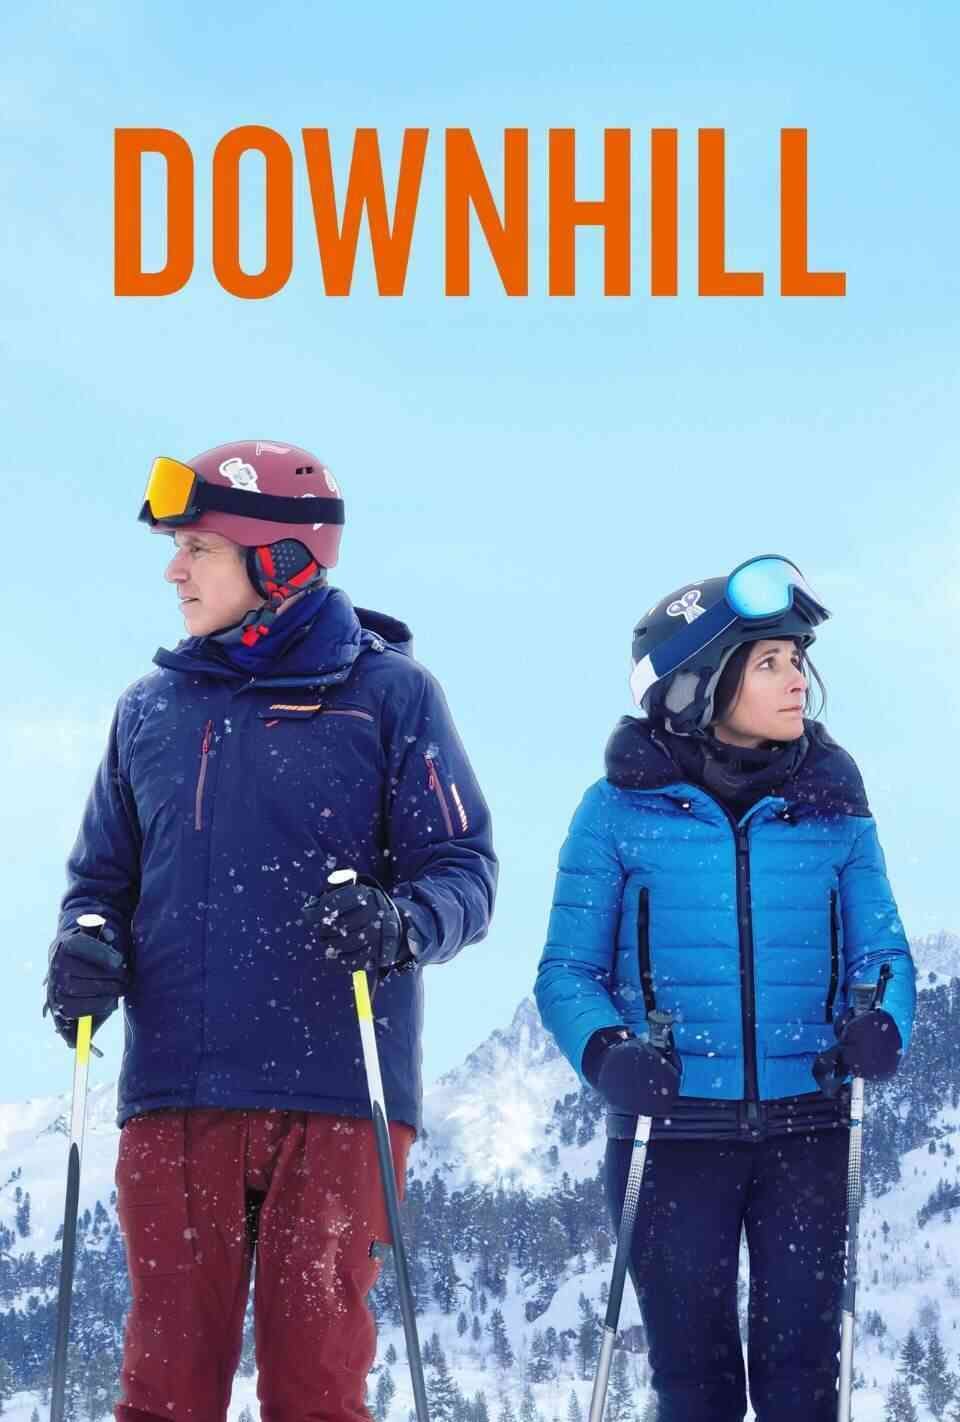 Read Downhill screenplay.